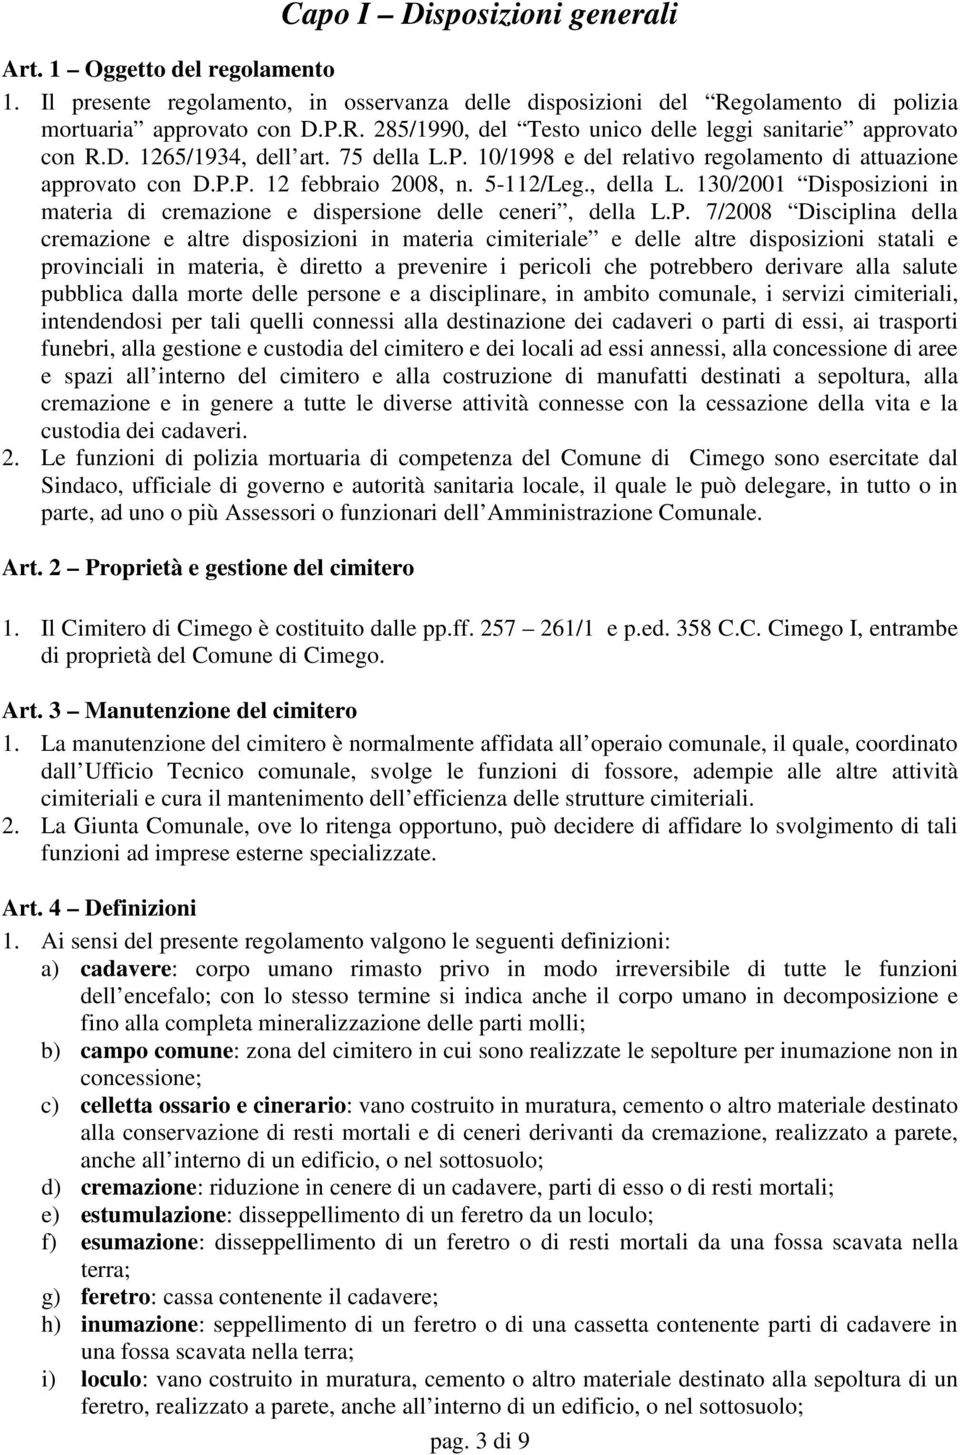 130/2001 Disposizioni in materia di cremazione e dispersione delle ceneri, della L.P.